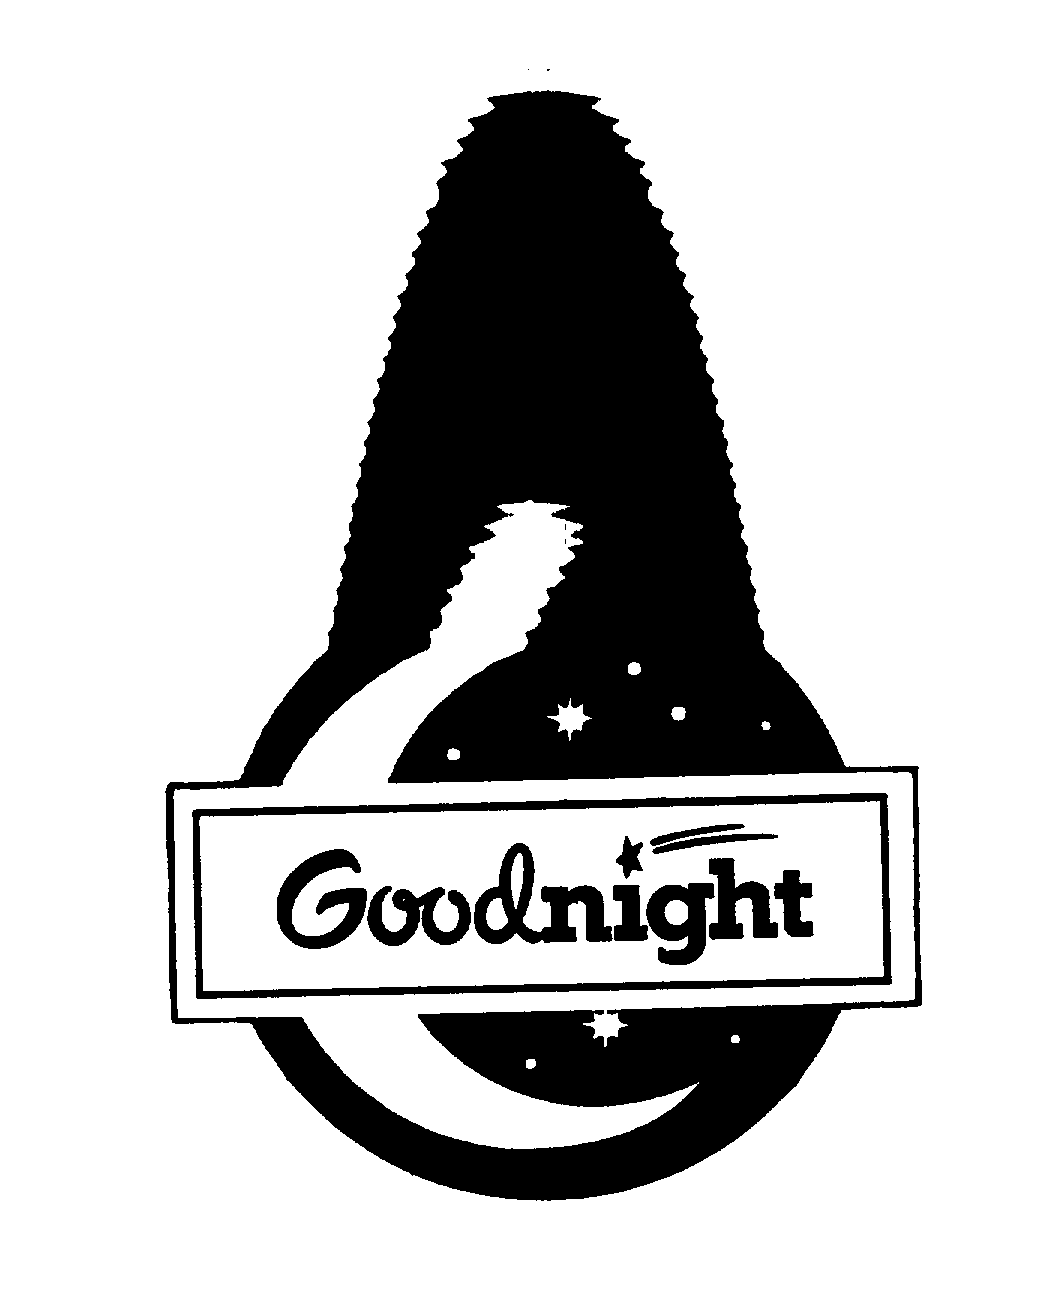 GOODNIGHT - Goodnight Family L.L.C. Trademark Registration